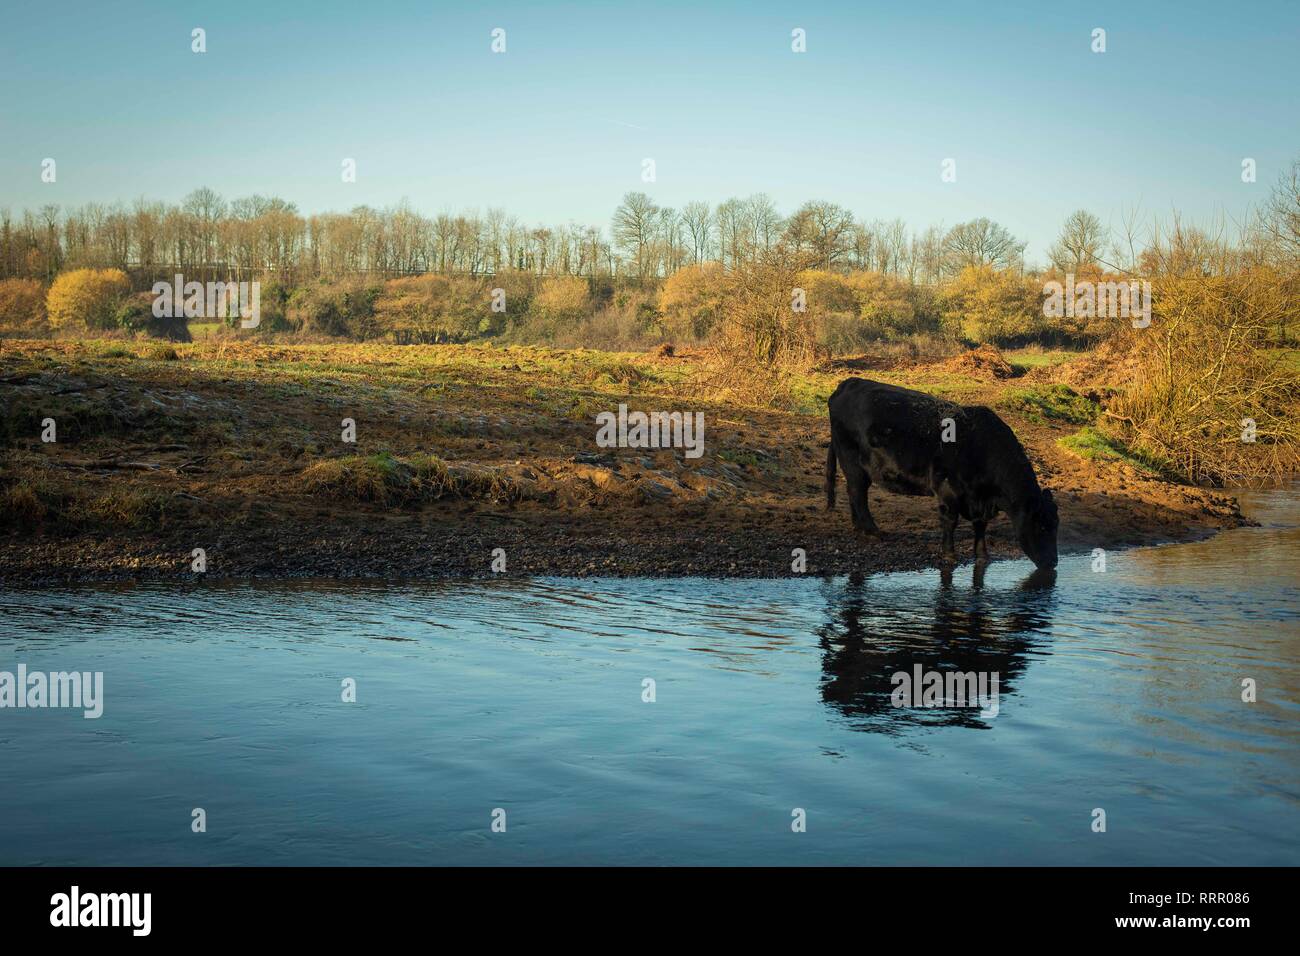 Cardiff, Wales, UK. 26. Februar 2019. Eine Kuh nimmt einen Schluck aus einem Fluss, da das Vereinigte Königreich seine wärmsten Februar auf Aufzeichnung Erfahrungen. Credit: Mark Hawkins/Alamy leben Nachrichten Stockfoto